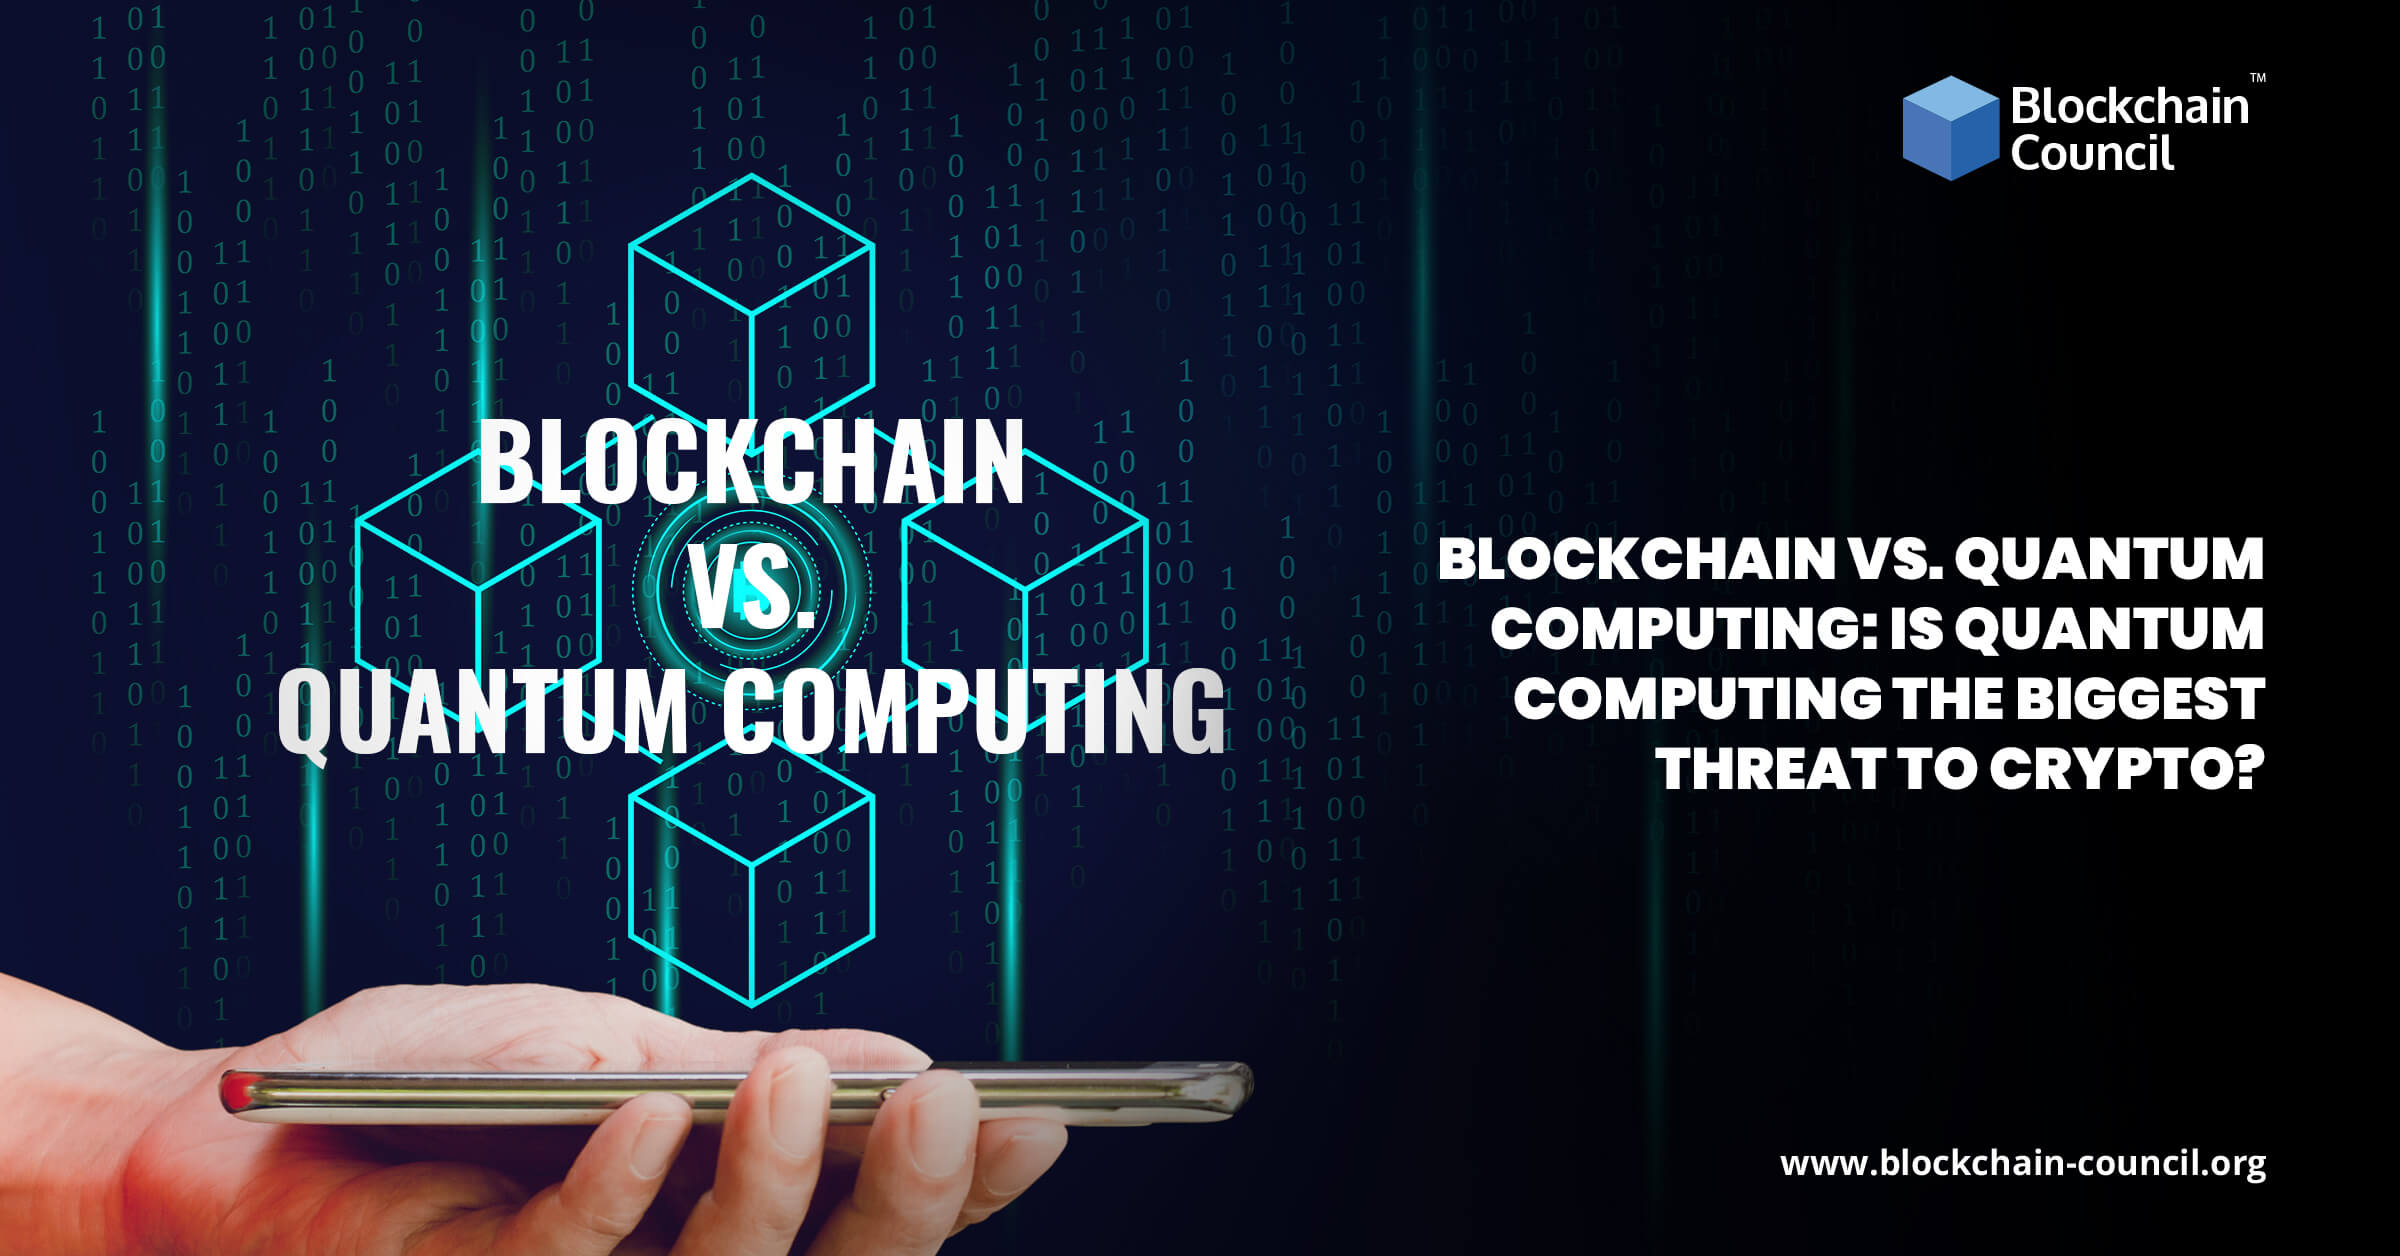 Blockchain Vs. Quantum Computing Is Quantum Computing the Biggest Threat to Crypto